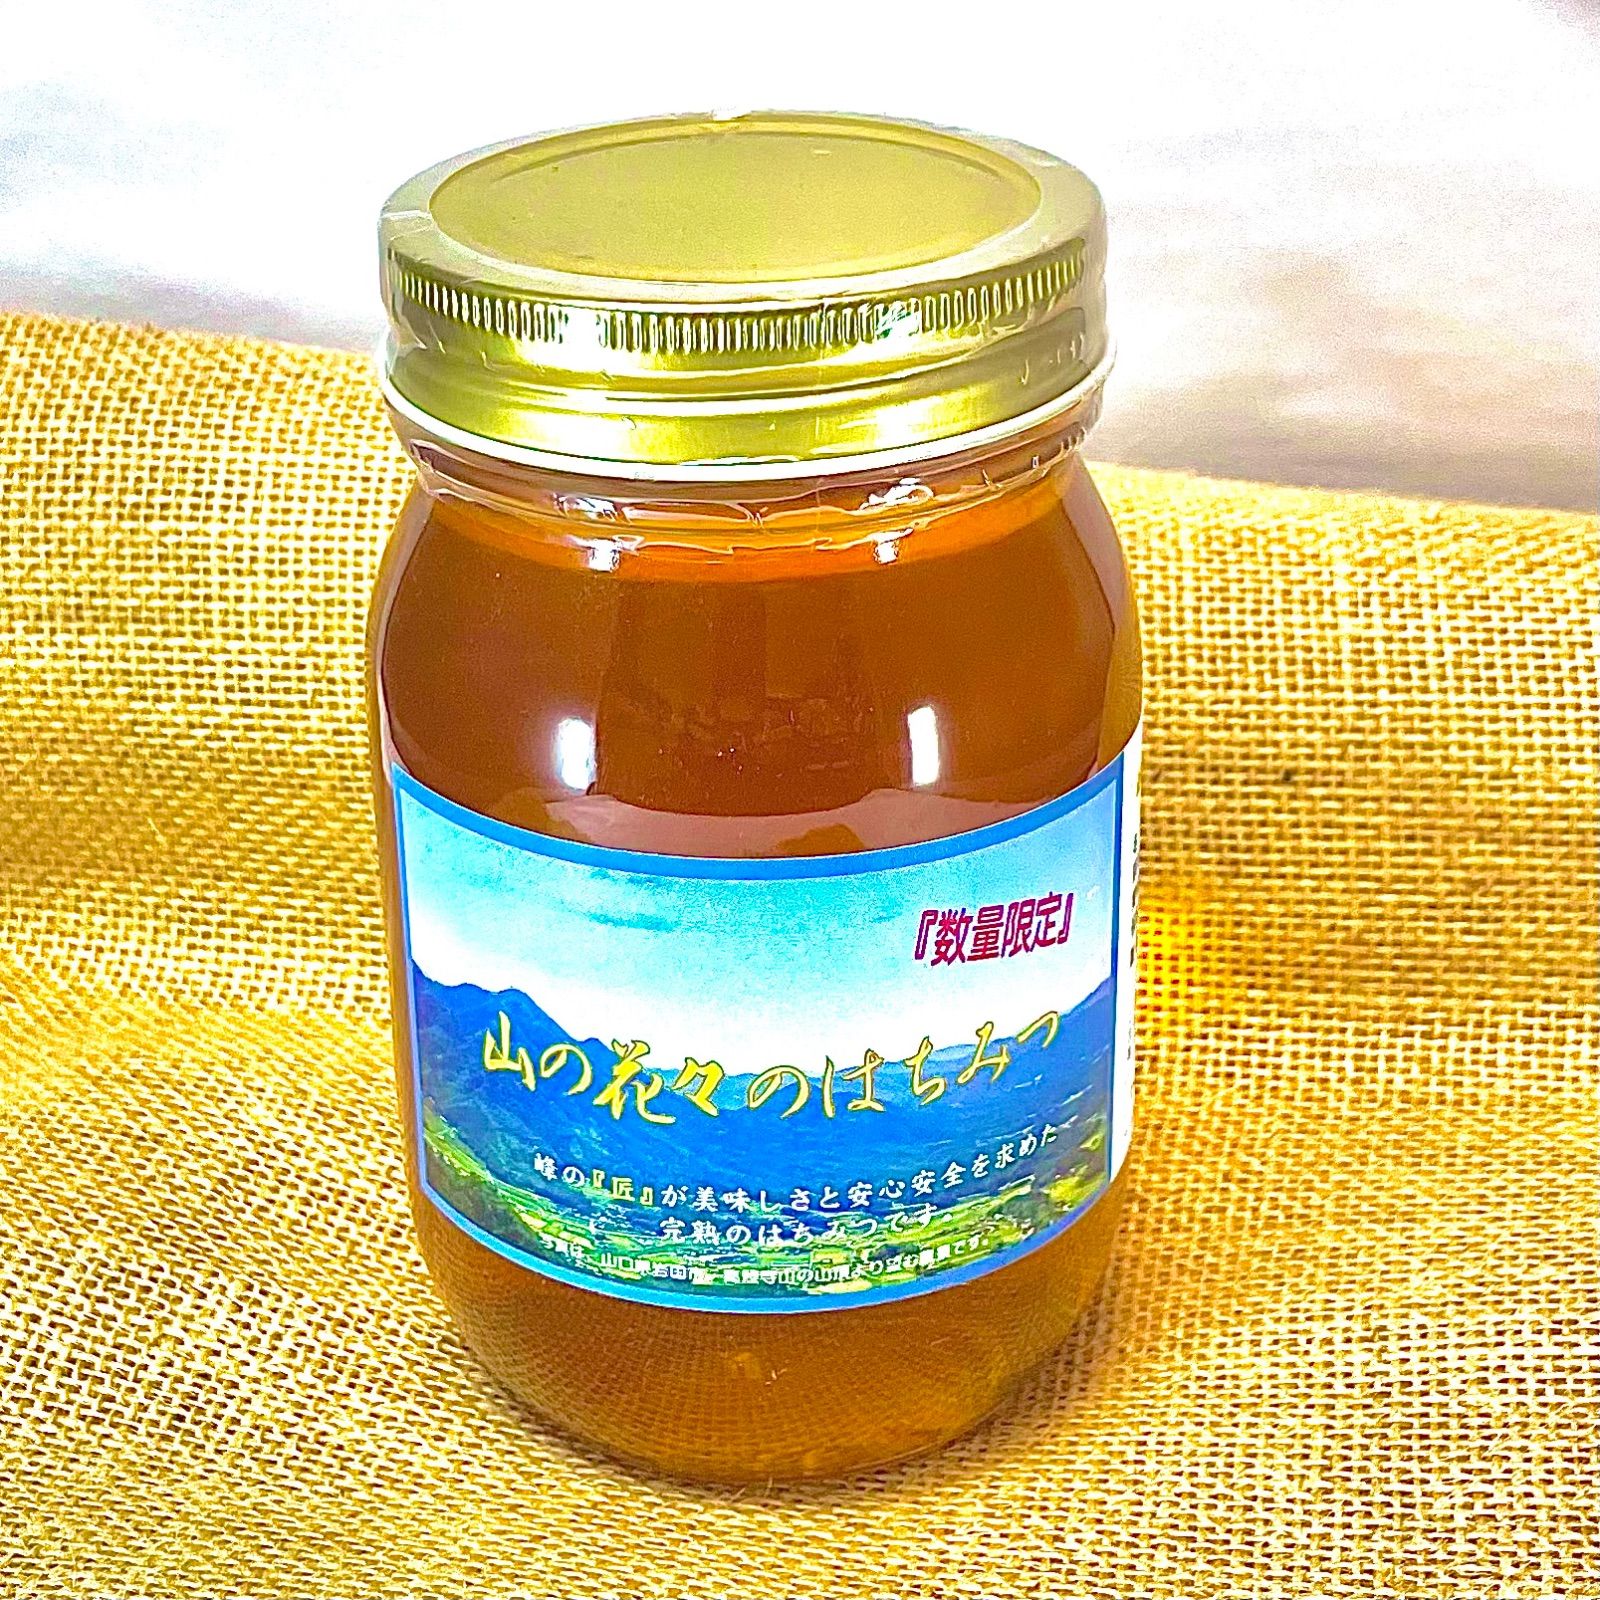 純国産生ハチミツ 天然 非加熱 つかもと養蜂場 - Honey Hive - メルカリ